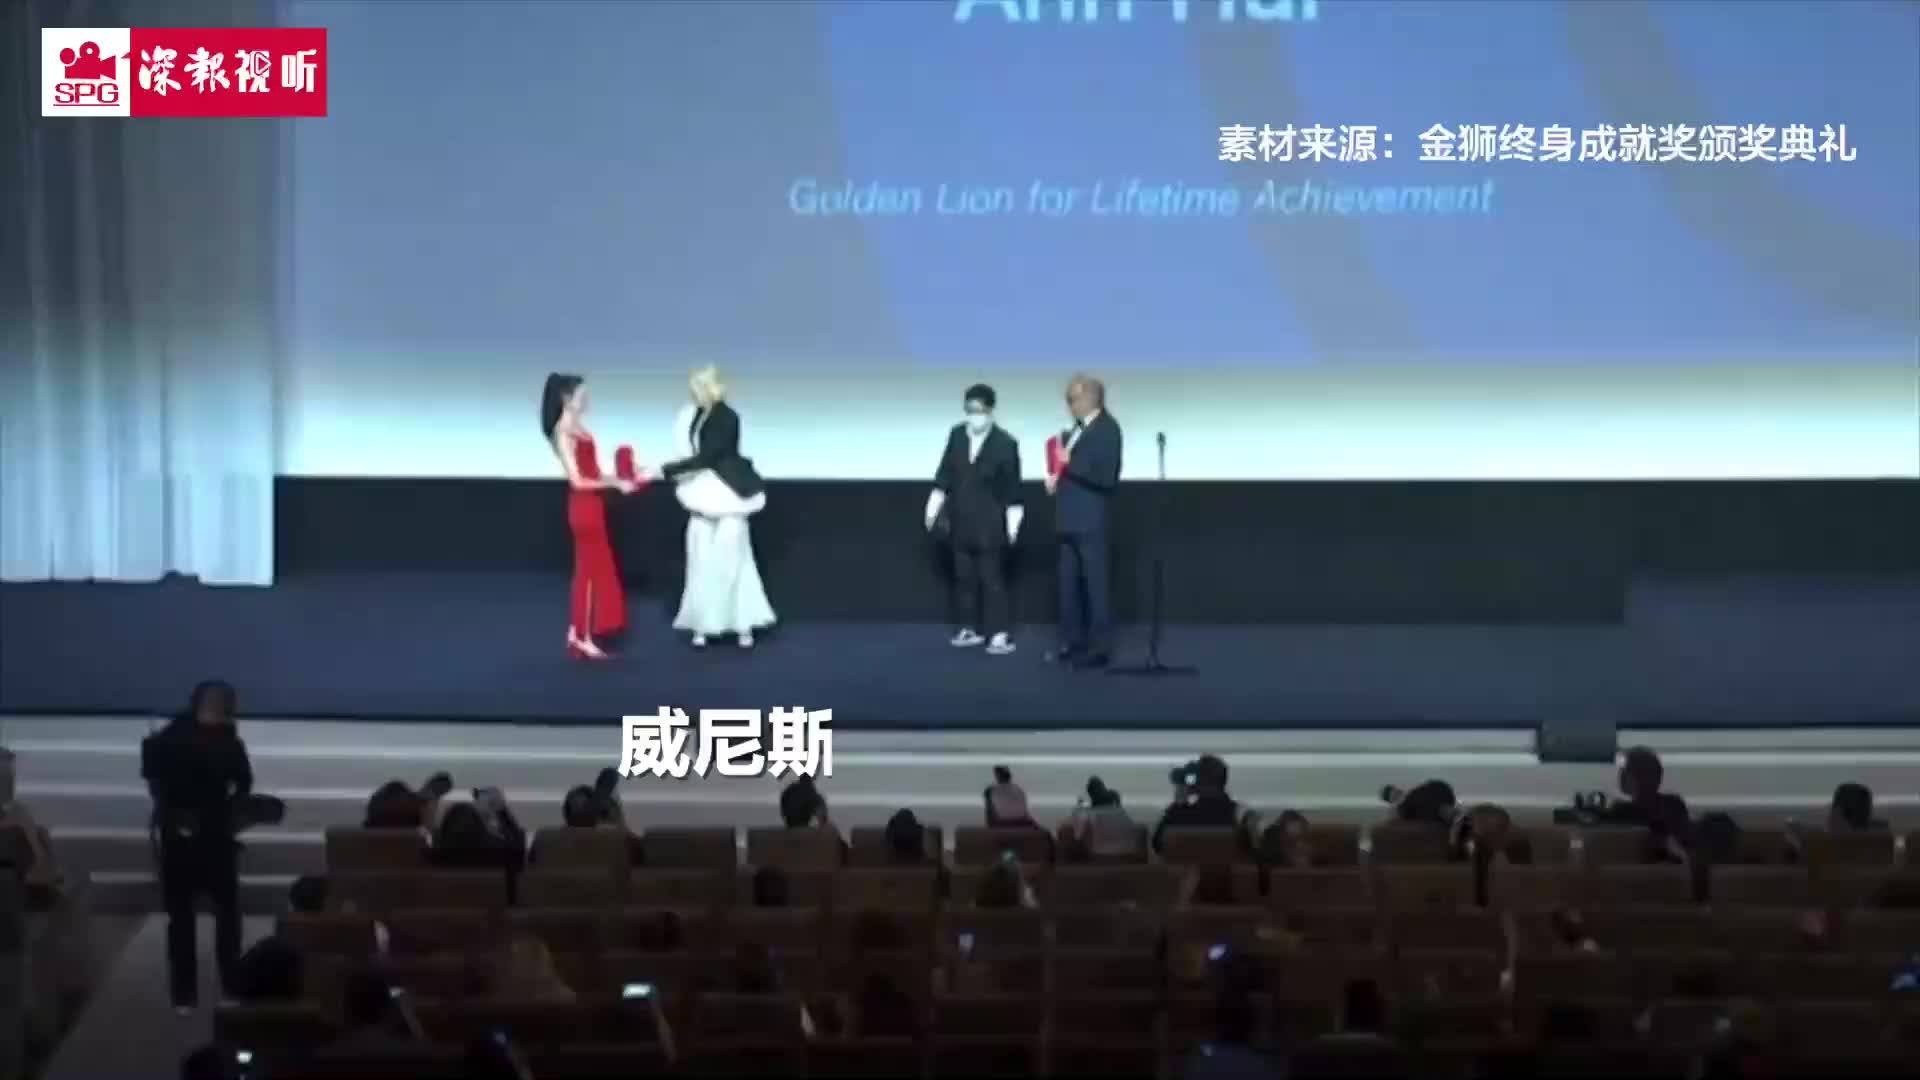 许鞍华领取威尼斯终身成就奖，成为全球首个获该奖女导演